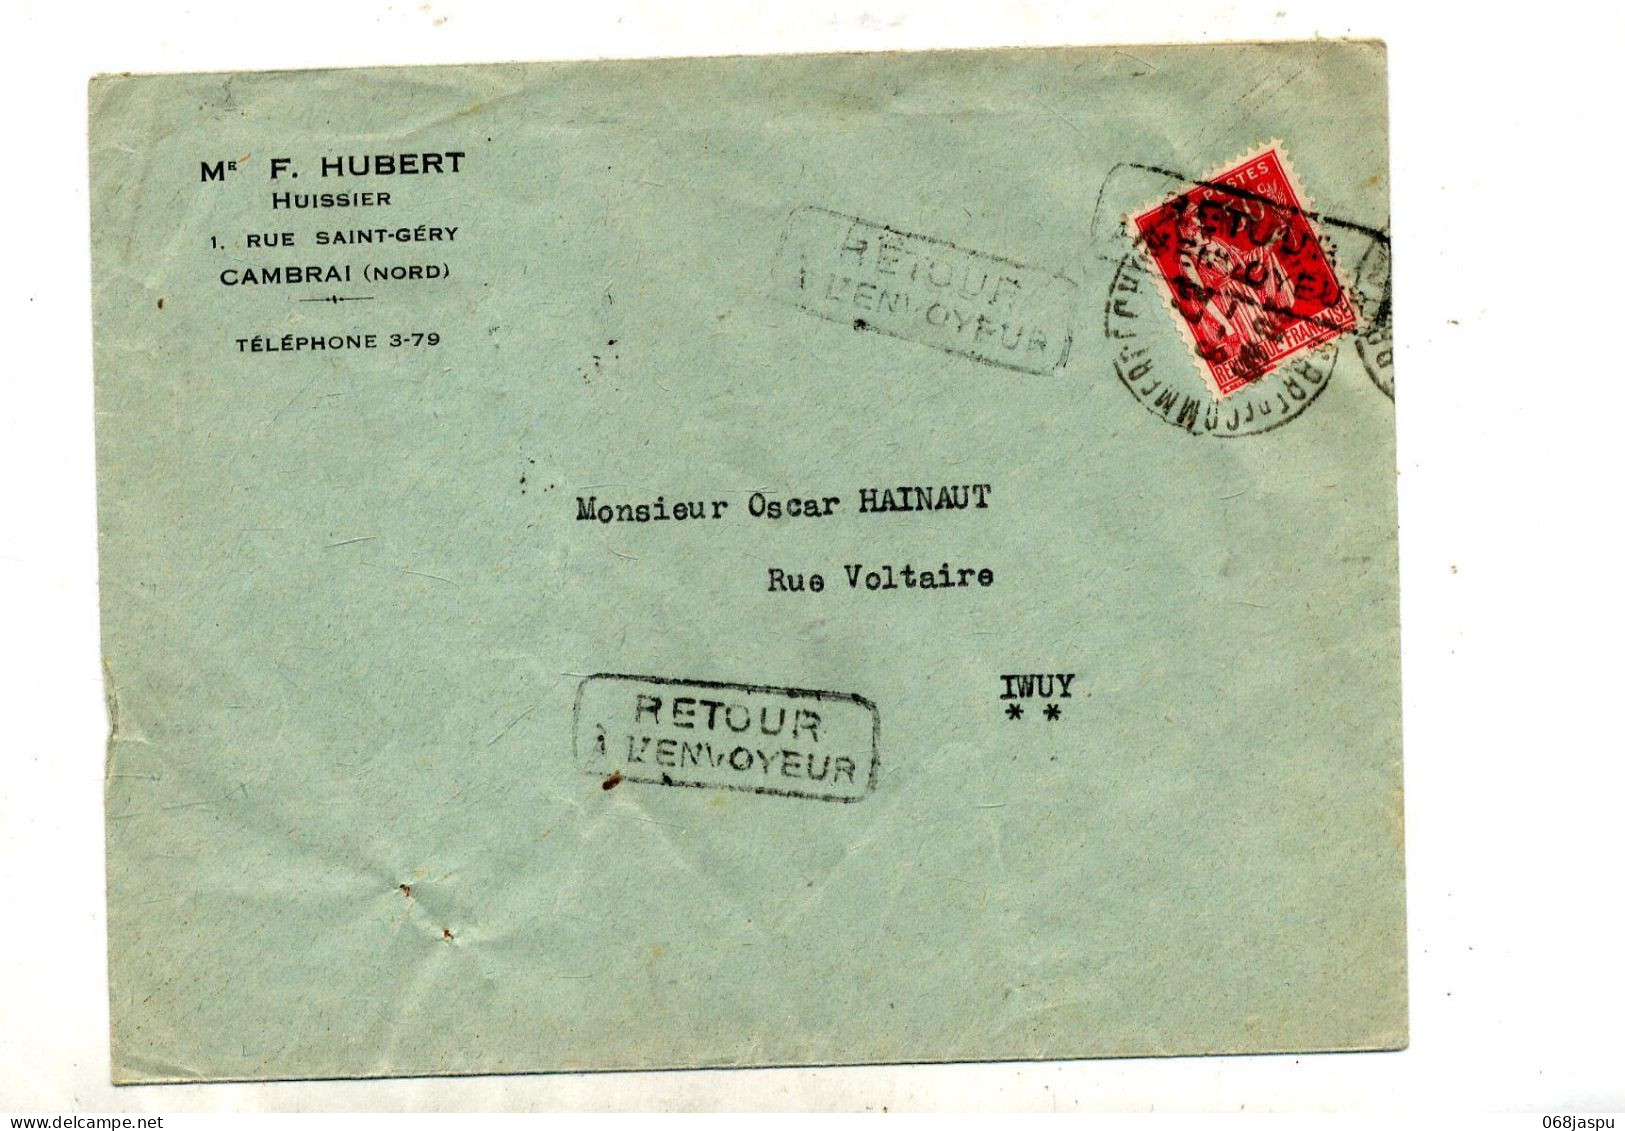 Lettre Cachet Cambrai + Retour   Inconnu Manuscrit - Manual Postmarks